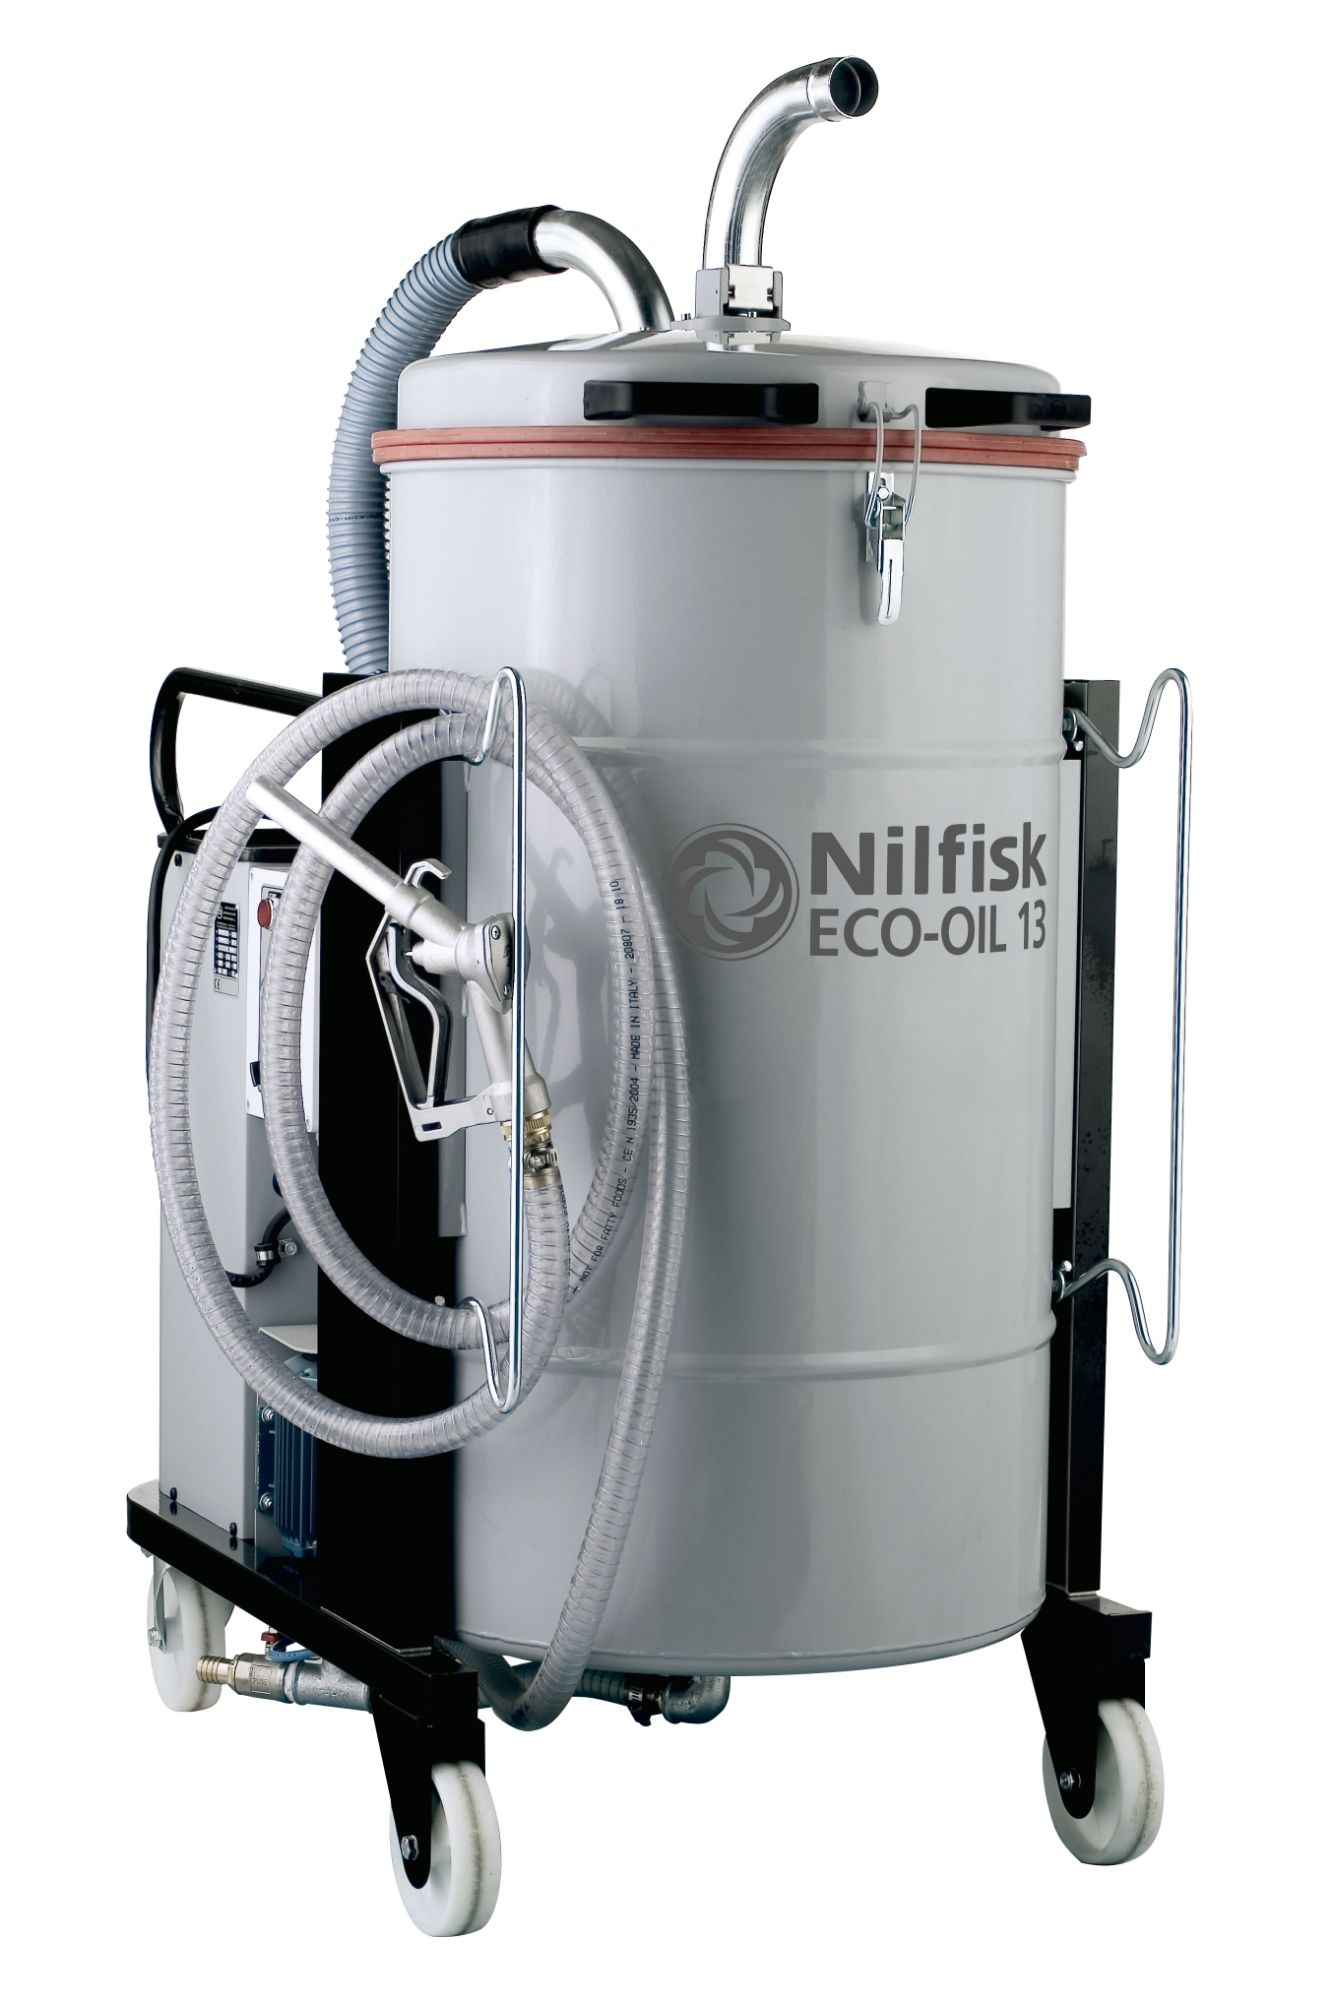 Nilfisk ECO OIL 13 Industrial Vacuum